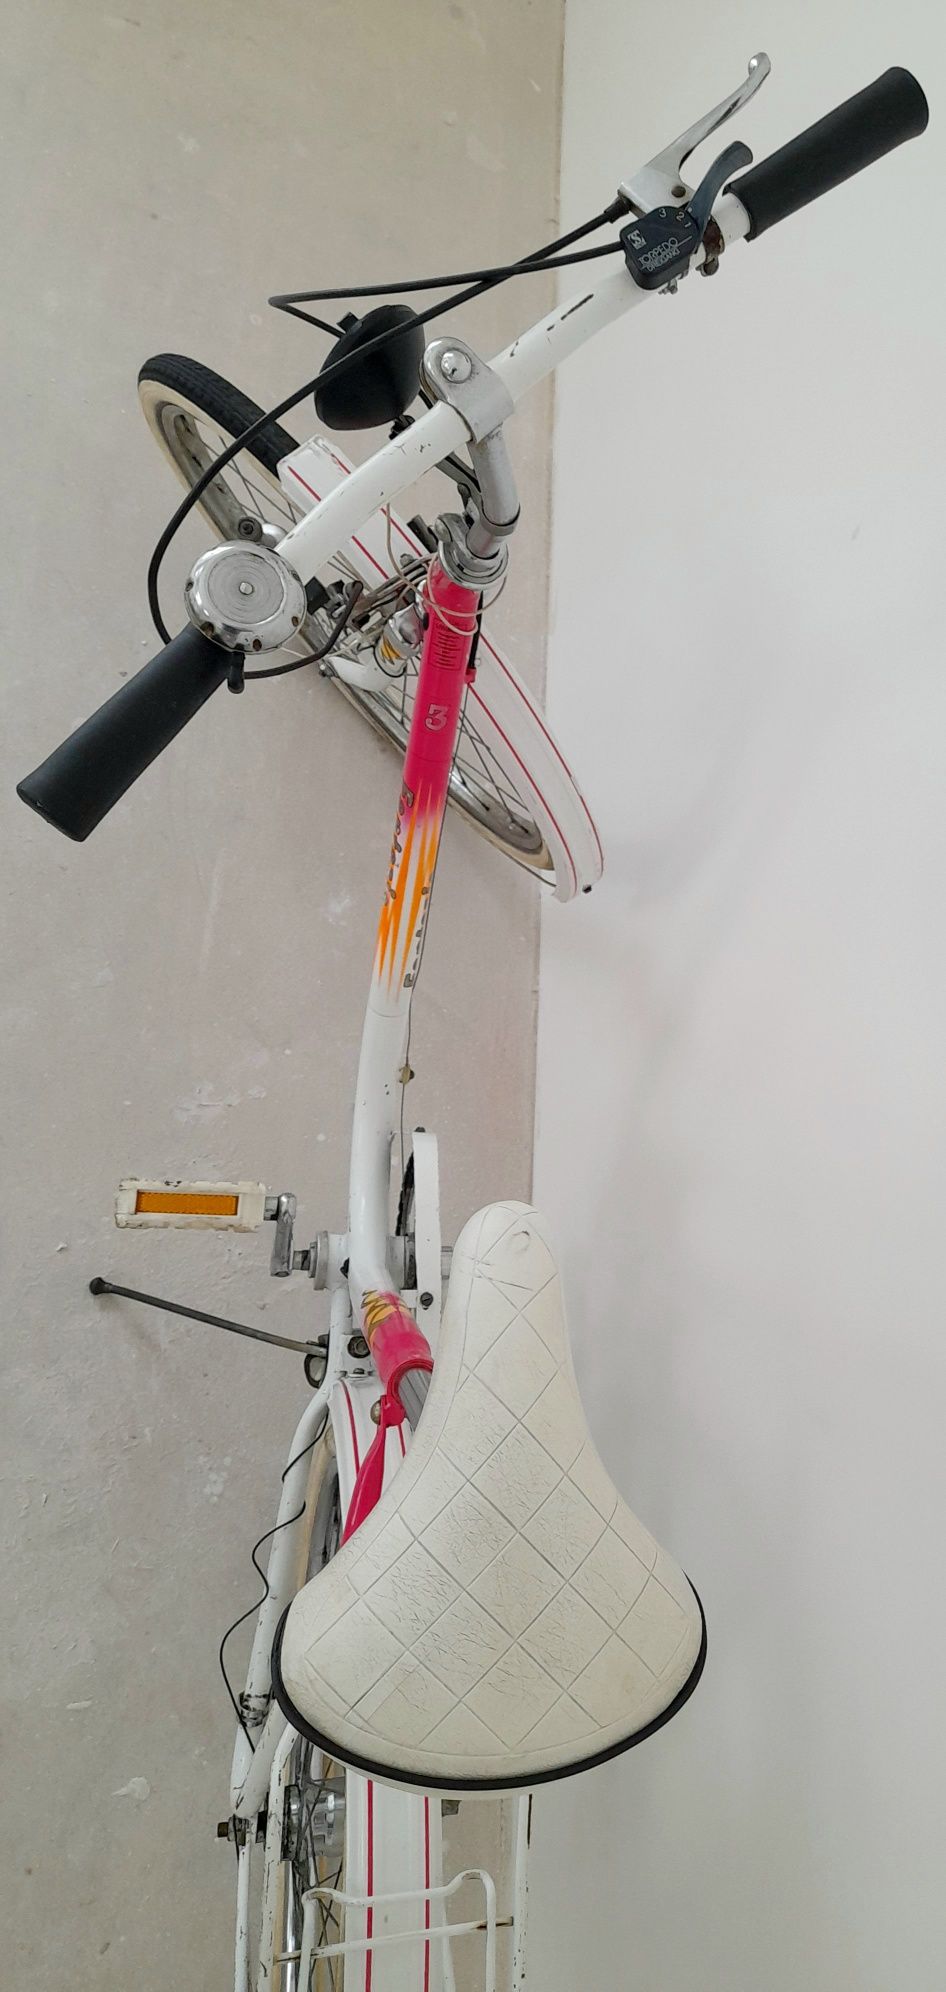 FSM Fantazja rower sprawny oryginał zabytkowy unikat prl romet wigry